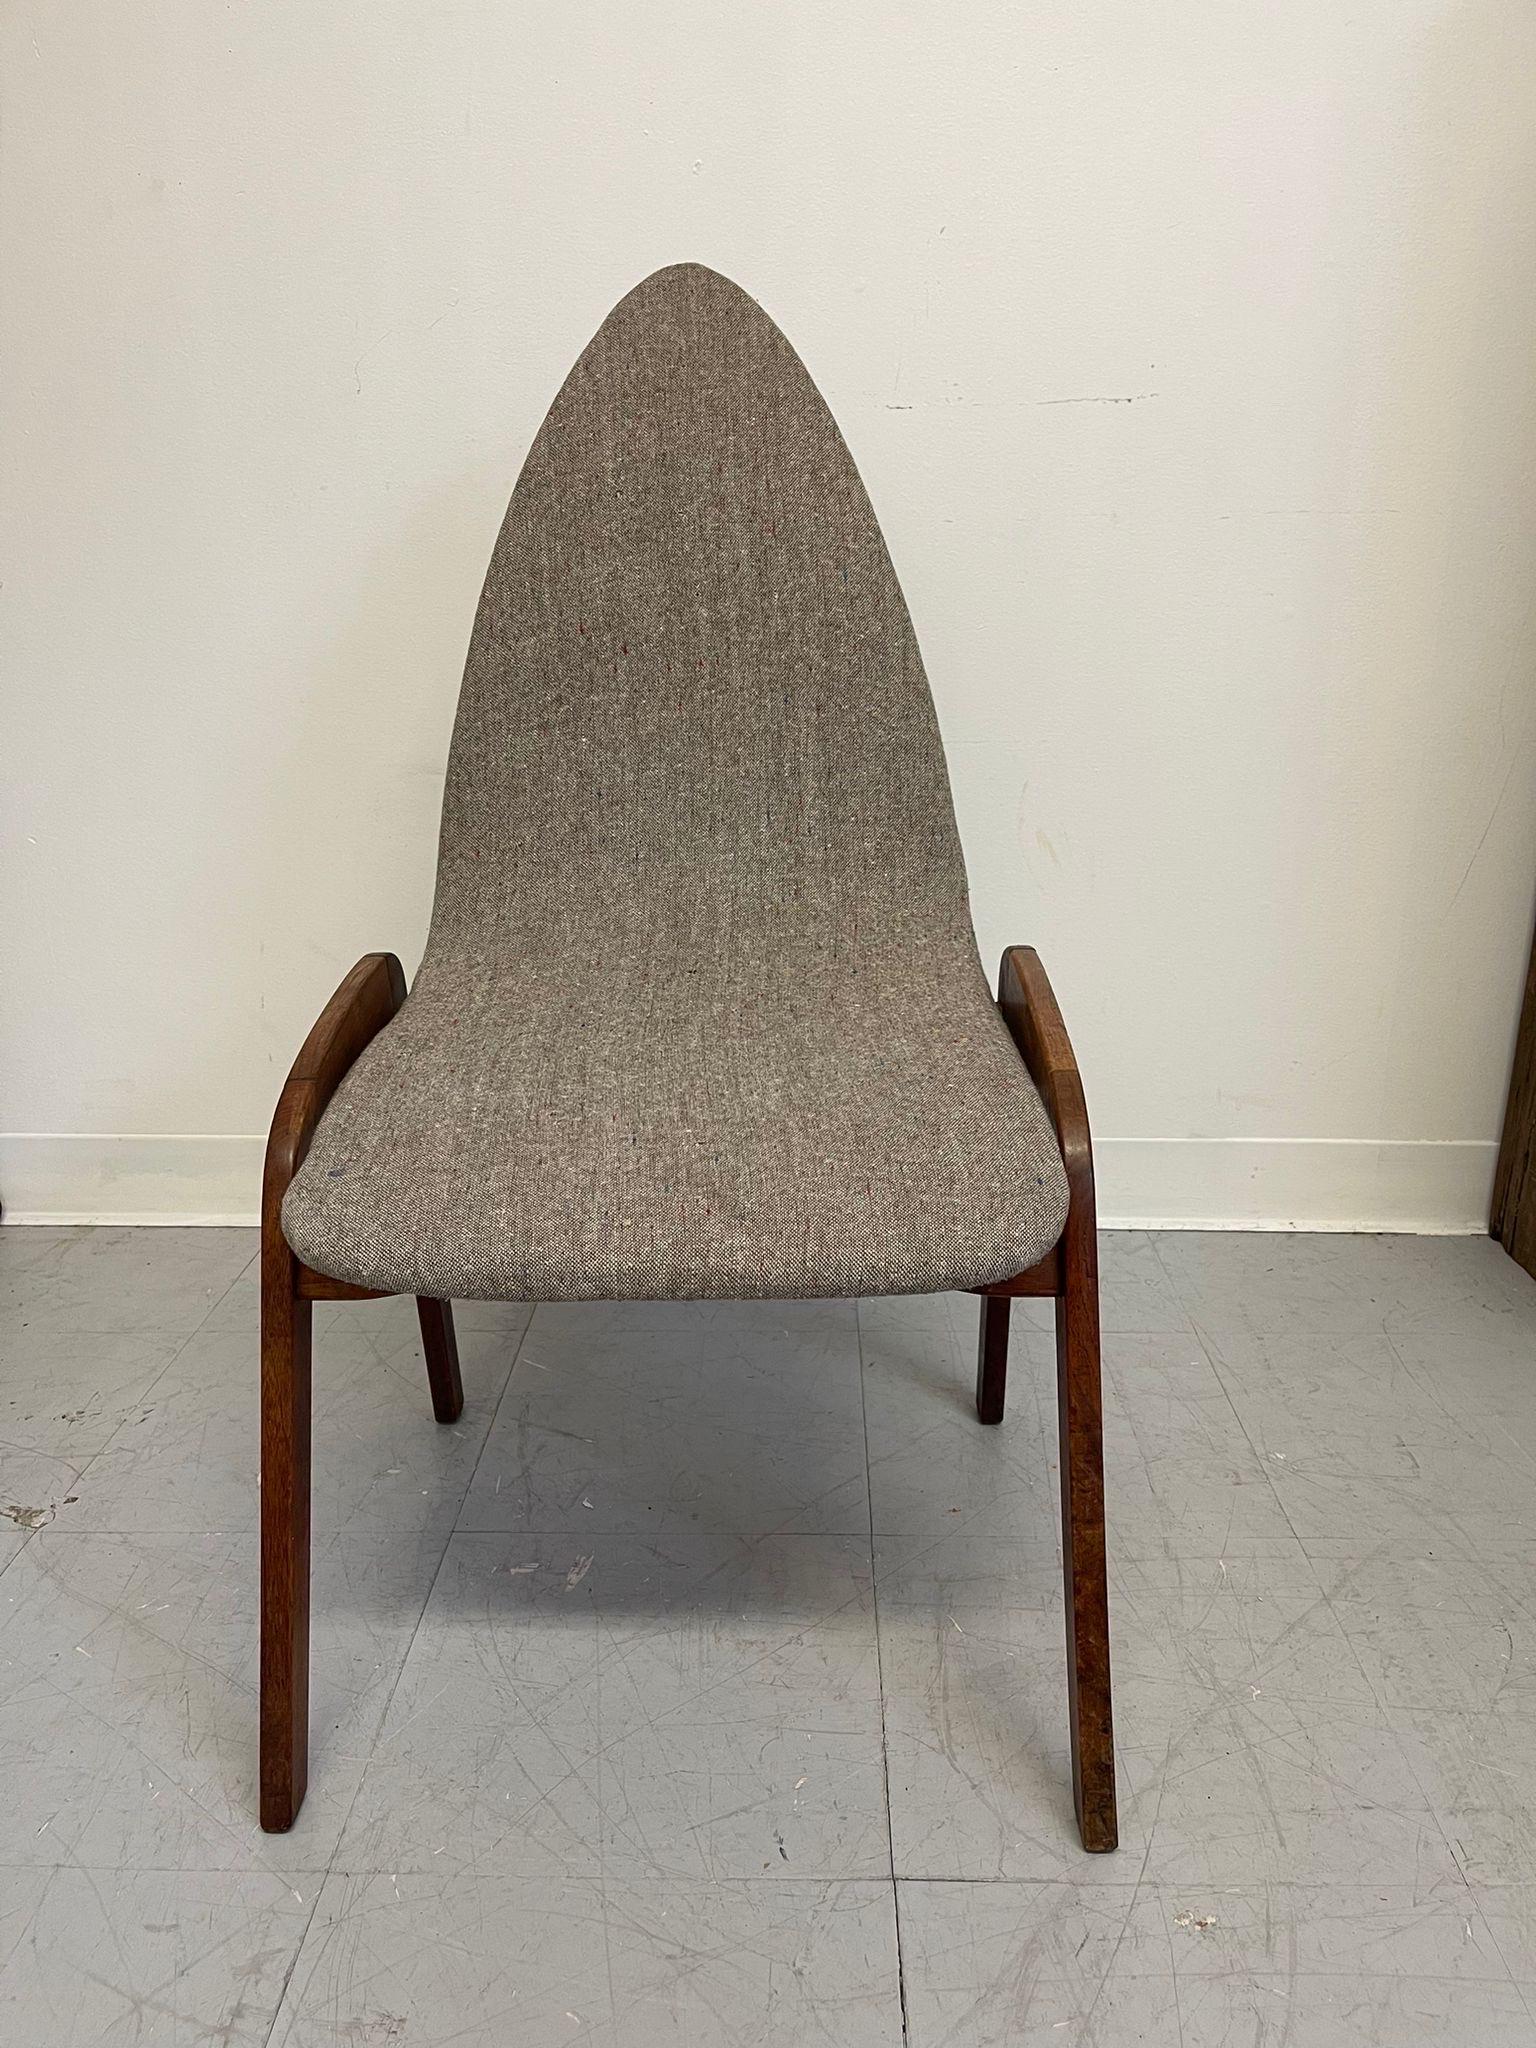 Im Stil von Chet Beardsley haben diese Stühle eine einzigartige, kegelförmige Platte. Möglicherweise CIRCA 1960. Auch die Krümmung der Beine ist einzigartig und hebt diesen Stuhl von anderen ab.

Abmessungen. 21 B ; 18,5 T ; 35 H
Sitzhöhe. 16